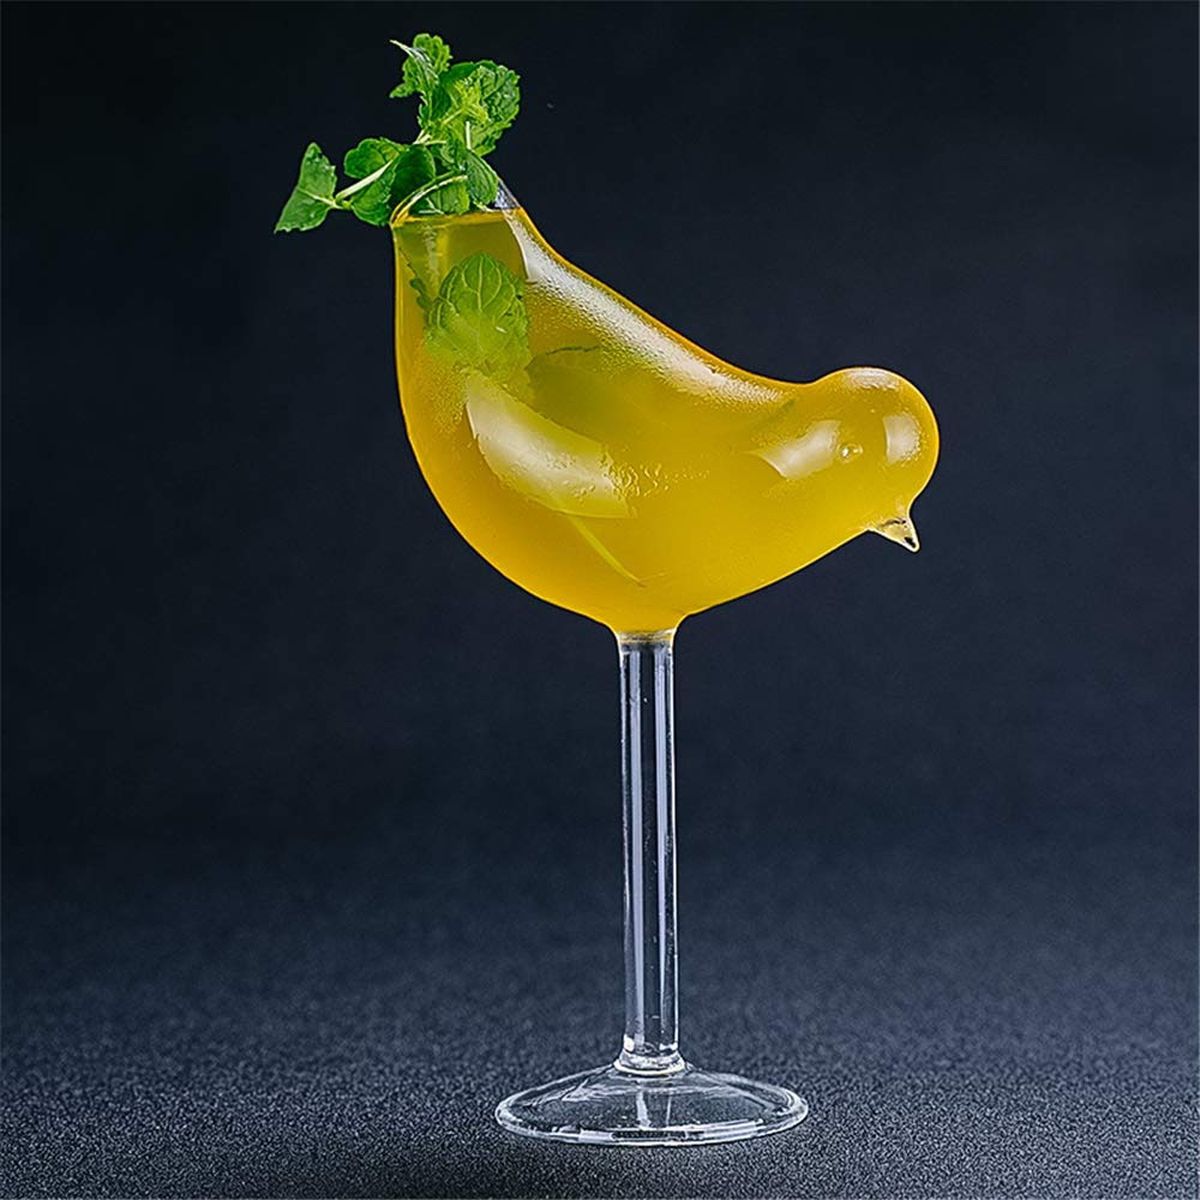 A glass shaped like a bird 